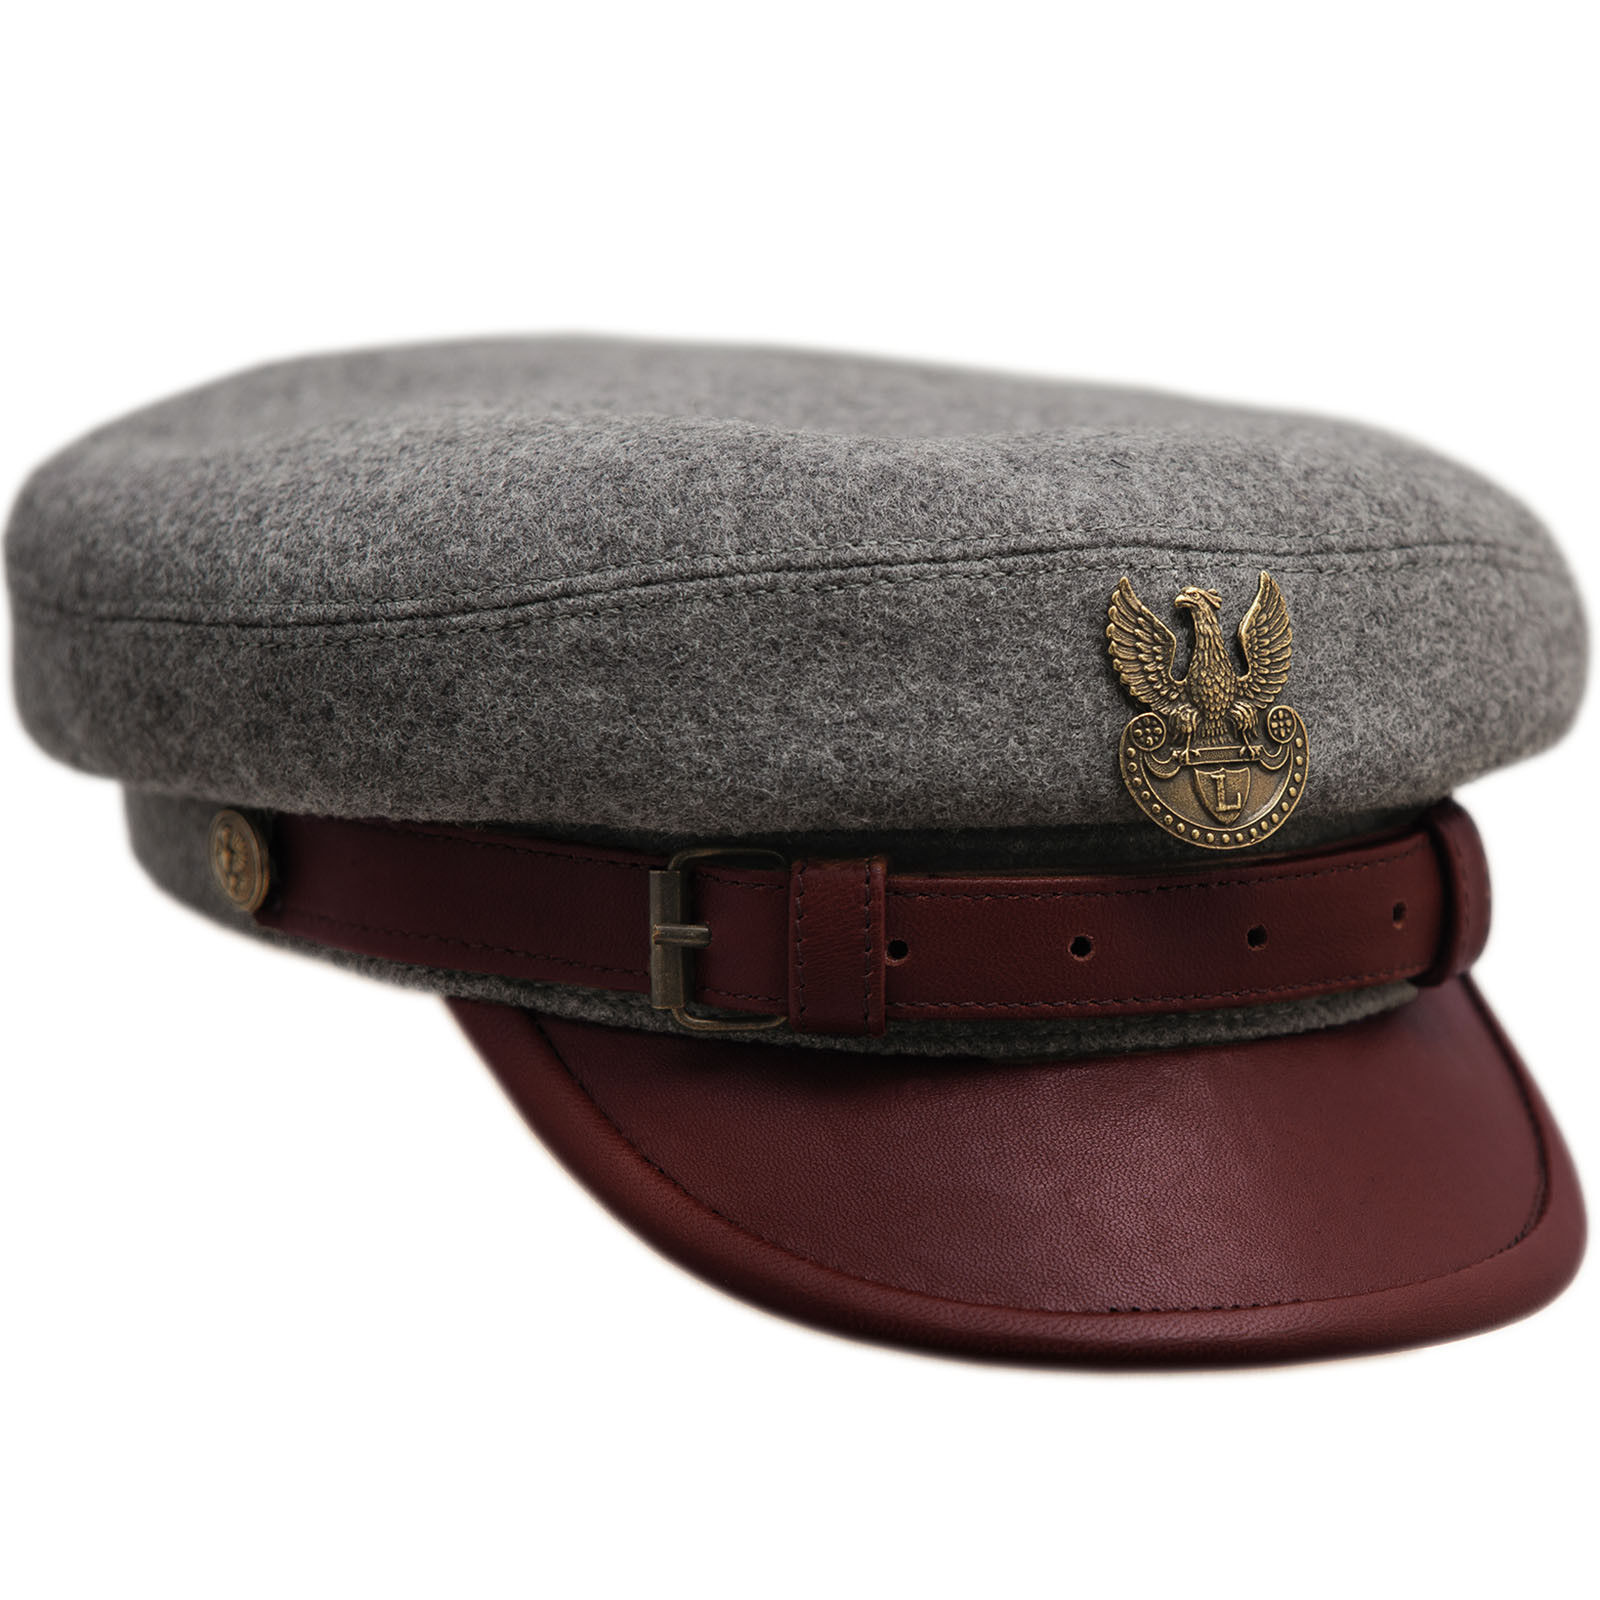 Sterkowski LEGION MACIEJOWKA REPLICA Wool Polish Cap Military Pilsudski Army